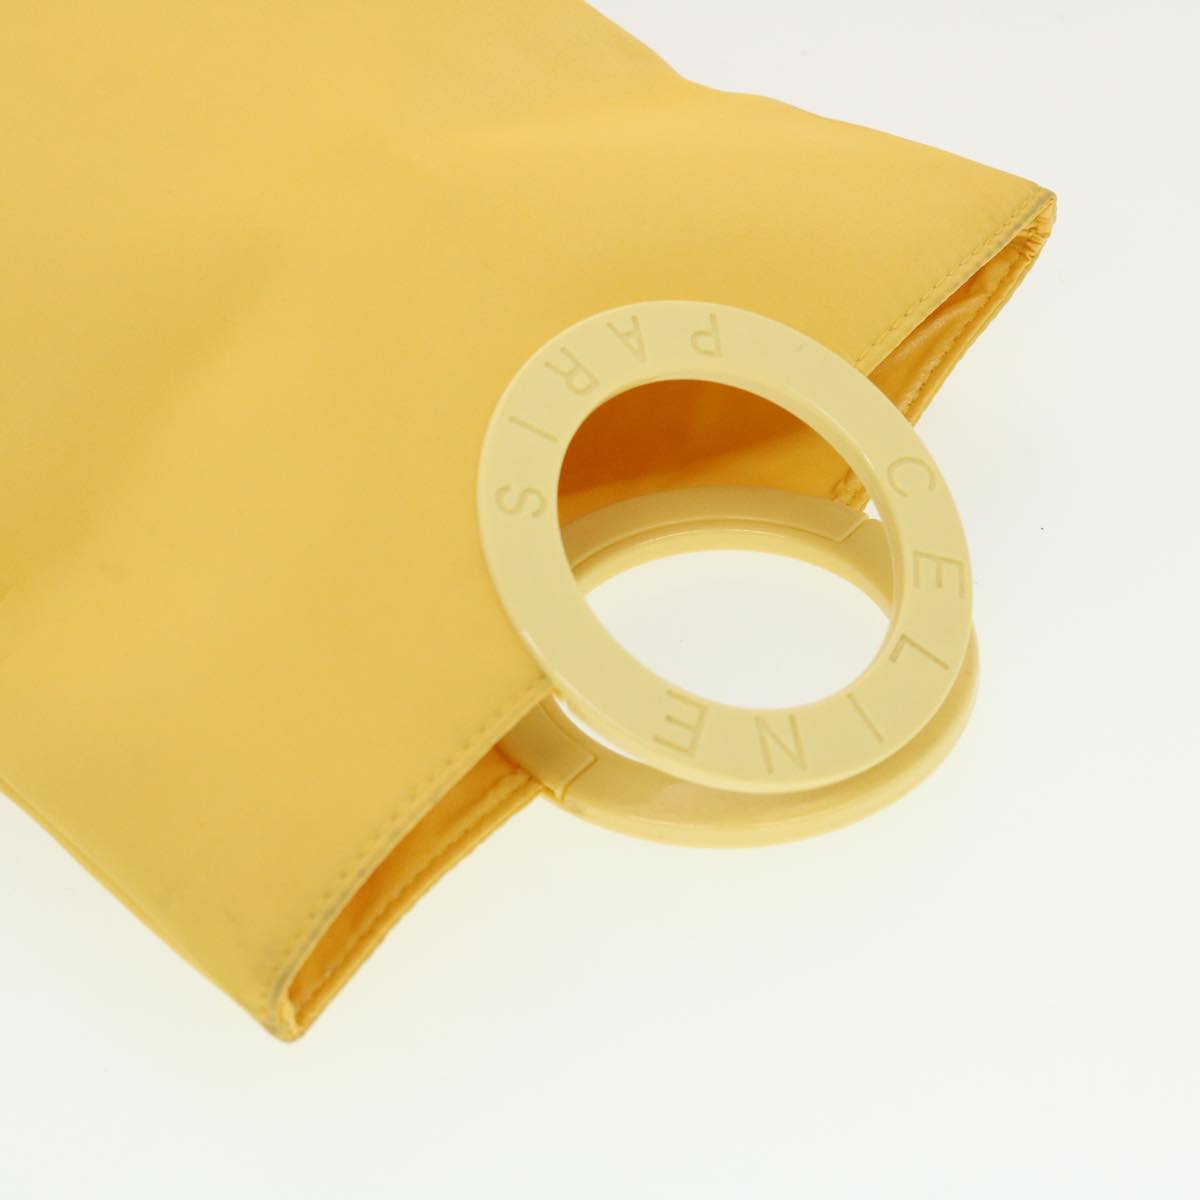 CELINE Hand Bag Nylon Yellow Auth 42583